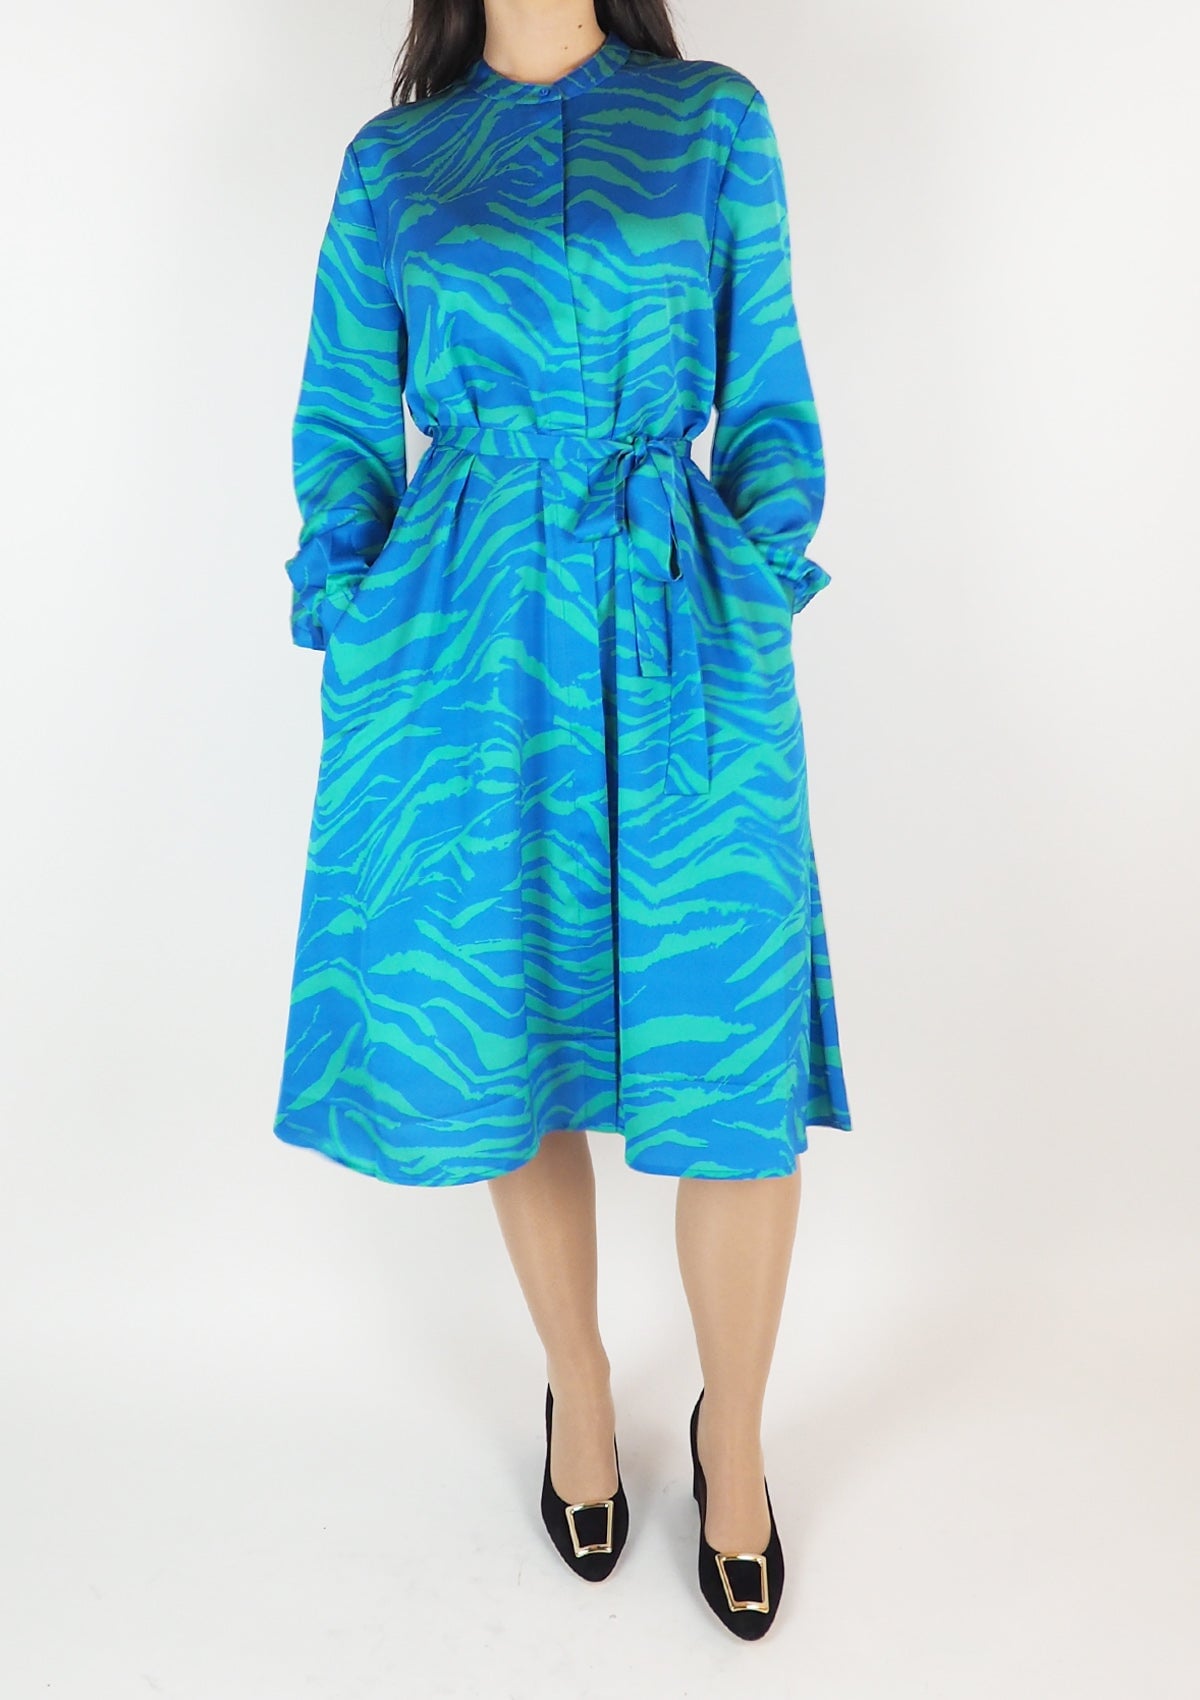 Damen Kleid aus Polyester in Blau & Grün Damen Kleid Anni Carlsson 